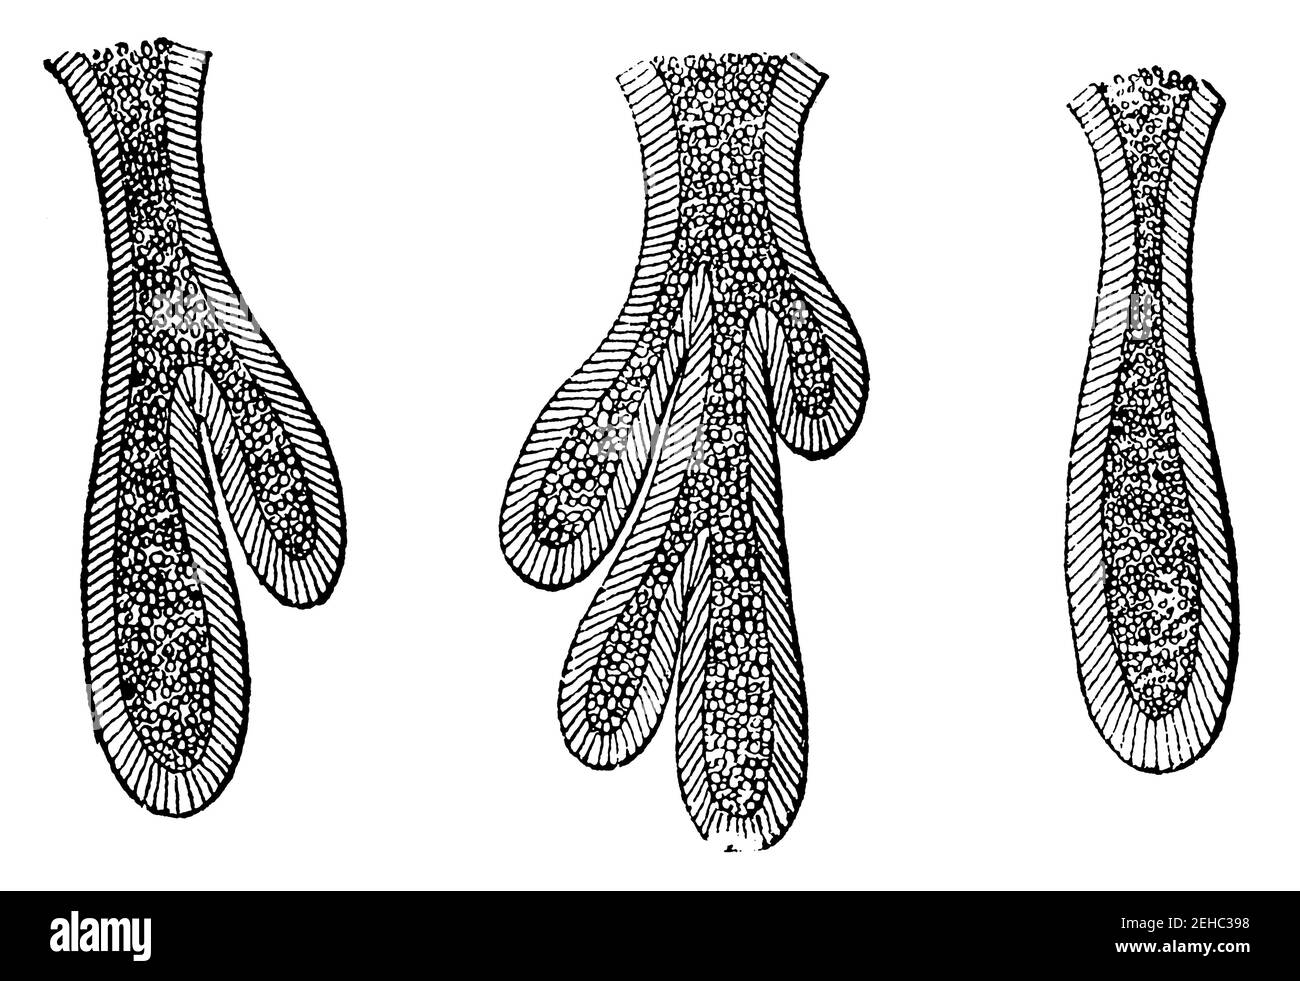 Tres glándulas intestinales aisladas (epitelio intestinal). Ilustración del siglo 19. Alemania. Fondo blanco. Foto de stock